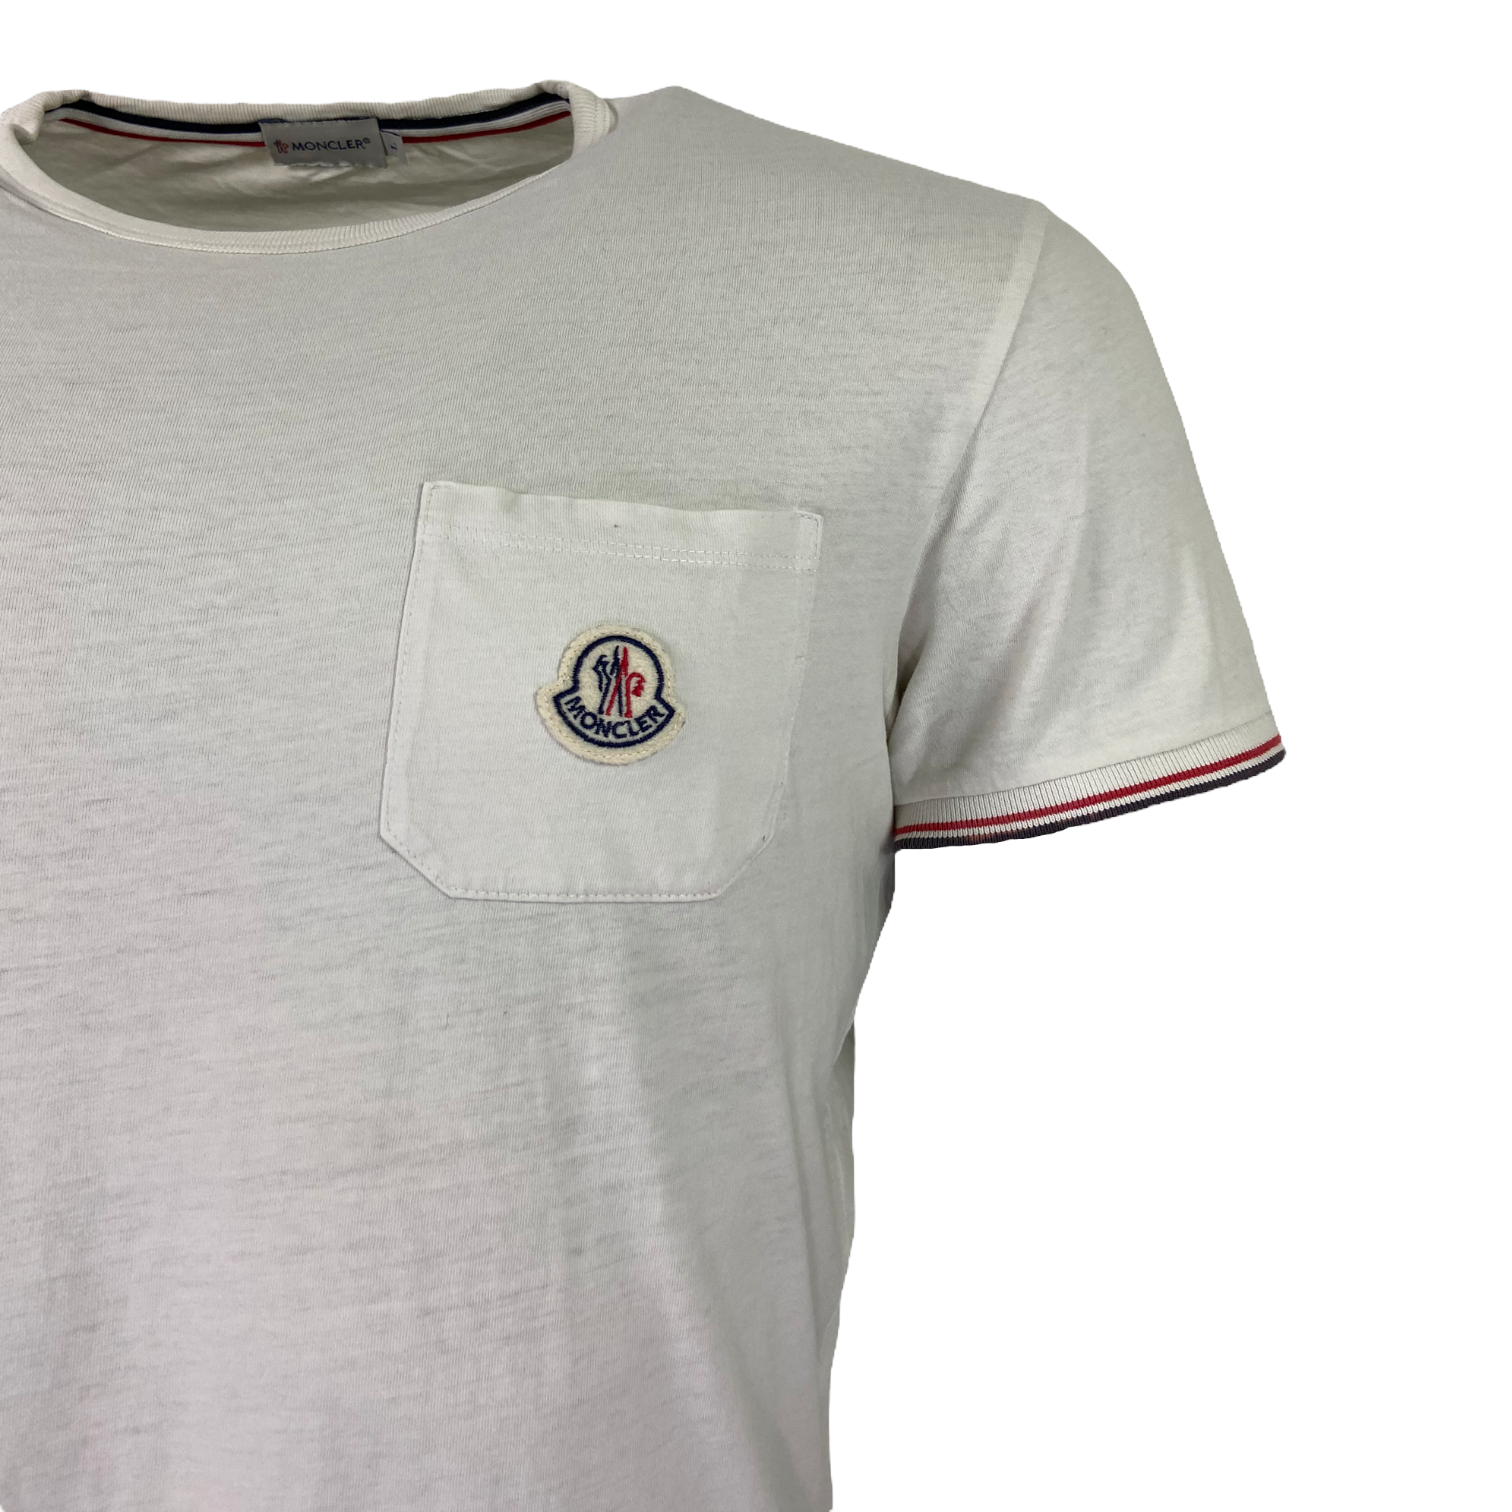 Moncler Logo T-Shirt - Size L (Fits S/M)